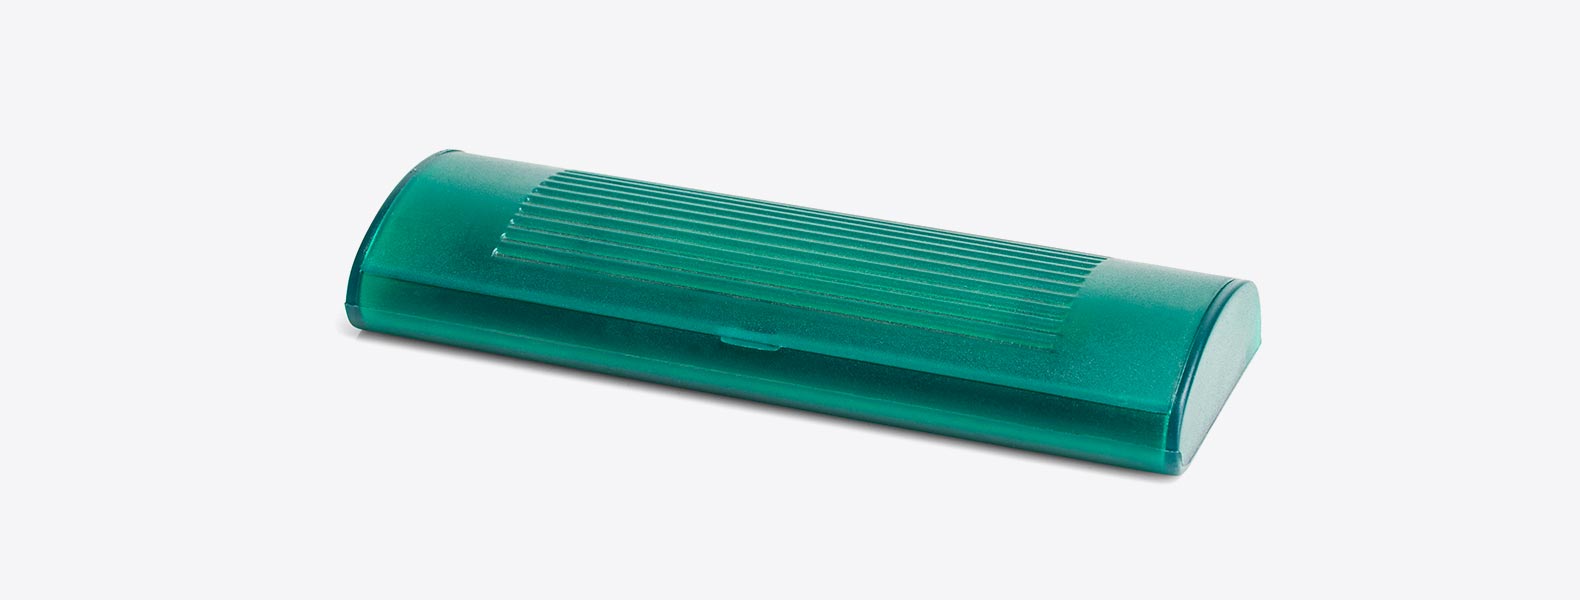 Caneta esferográfica em ABS verde com estojo plástico. Conta com tampa com abertura nas laterais, acabamento fosco, clipe em Metal e ponteira touch em Silicone preto. Carga esferográfica azul.